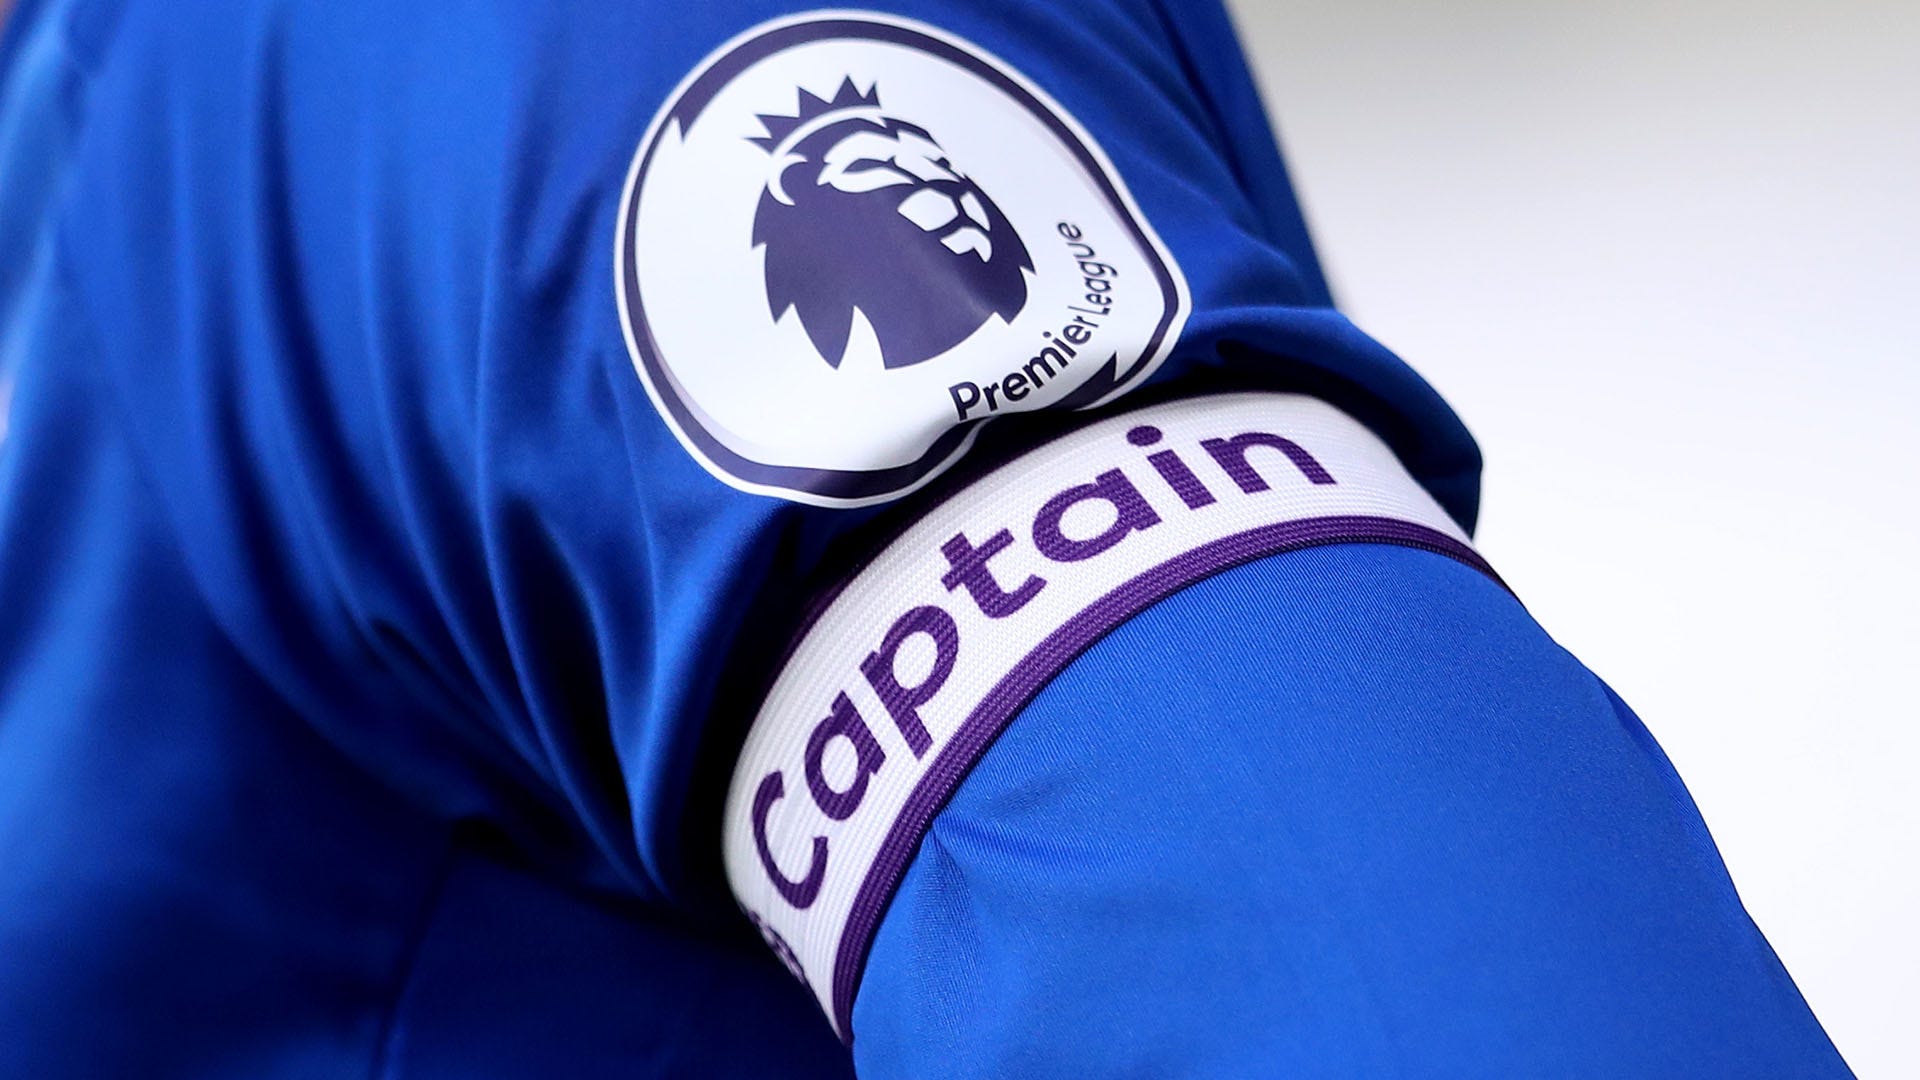 Captain armband Premier League 2020-21